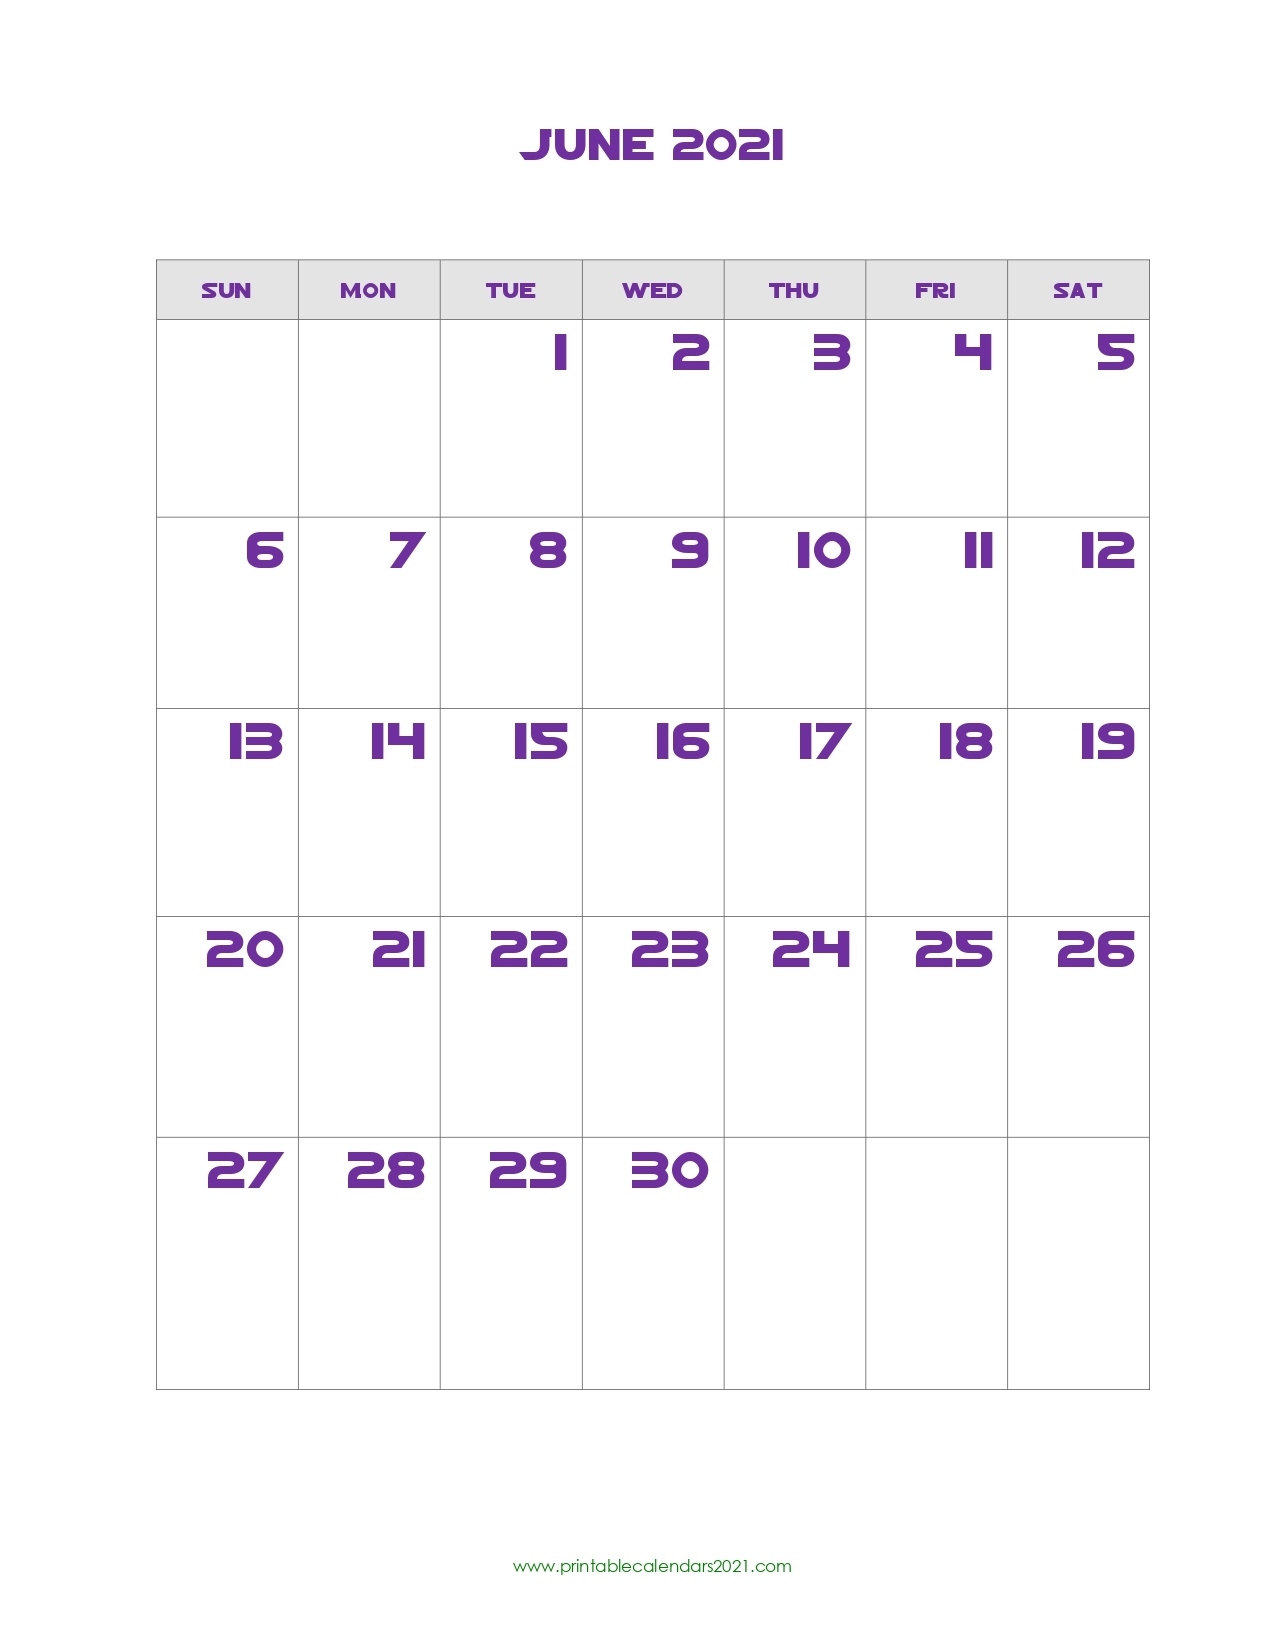 Printable Calendar June 2021, Printable 2021 Calendar With Holidays Show Me A Calendar Of June 2021